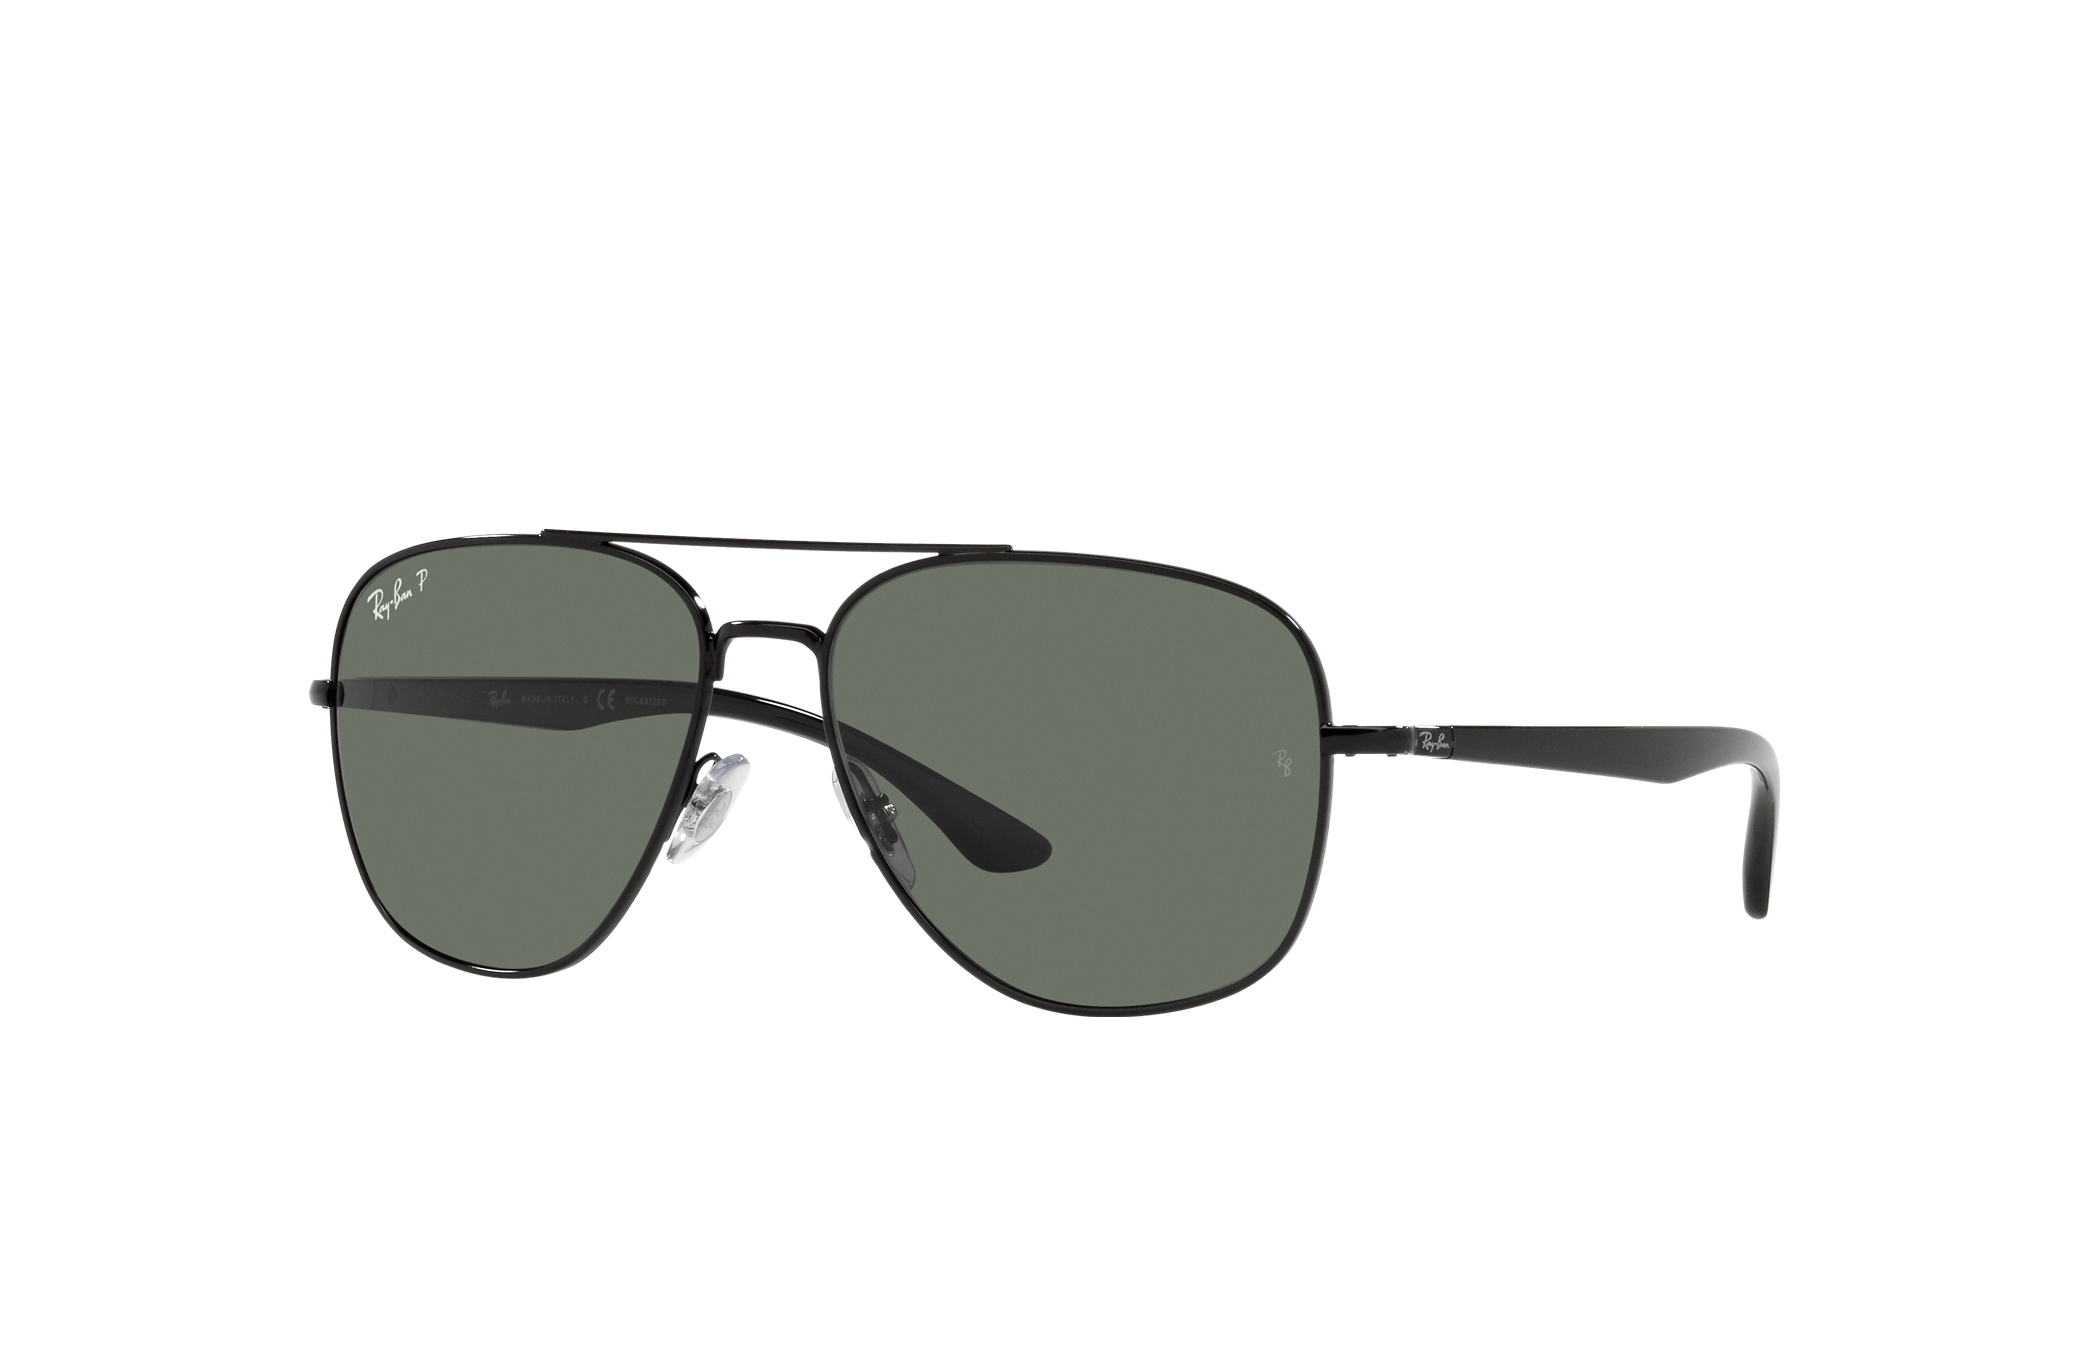 Ray-Ban Rb3683 Sunglasses Black Frame Green Lenses 56-15 Womens Sunglasses Ray-Ban Sunglasses Save 5% 